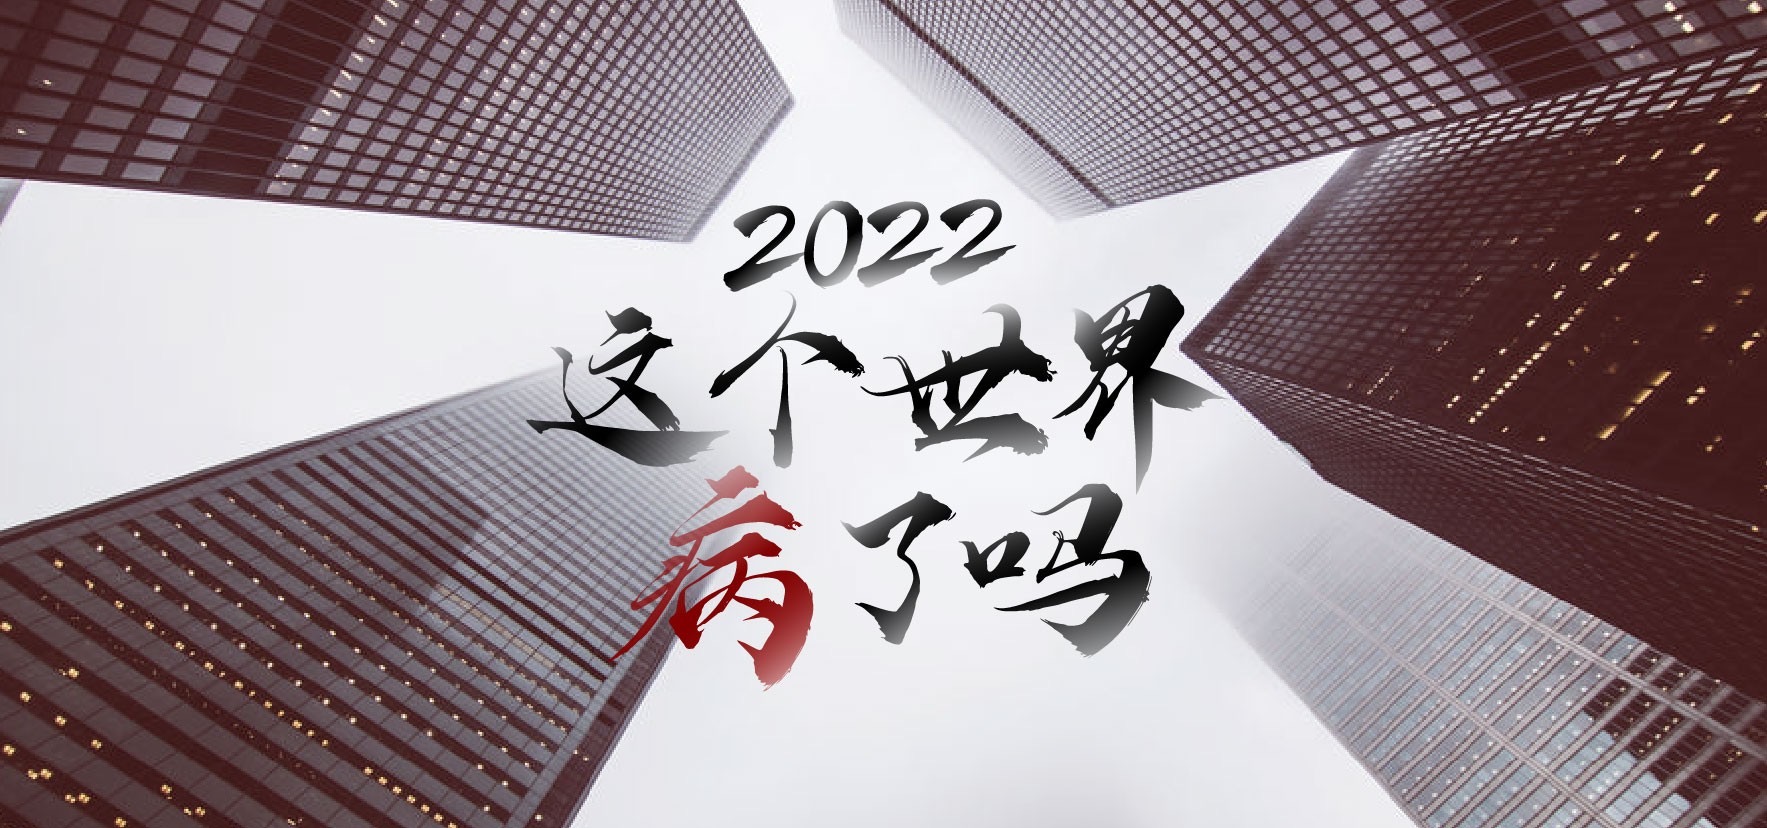 2022 這個世界病了嗎？